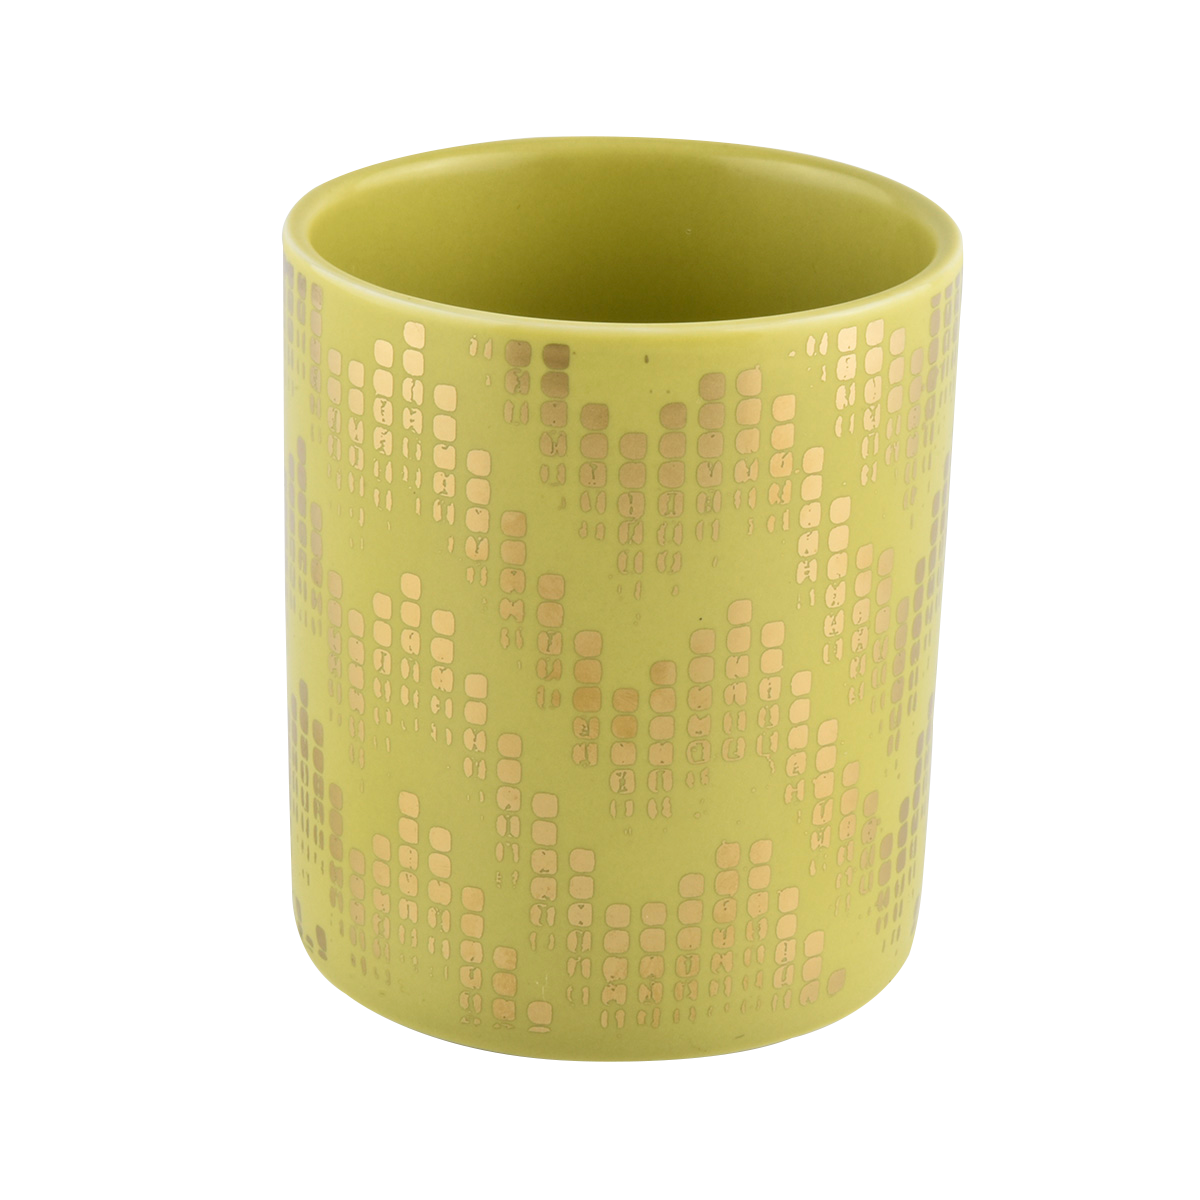 Guci lilin keramik warna lemon dengan pencetakan emas